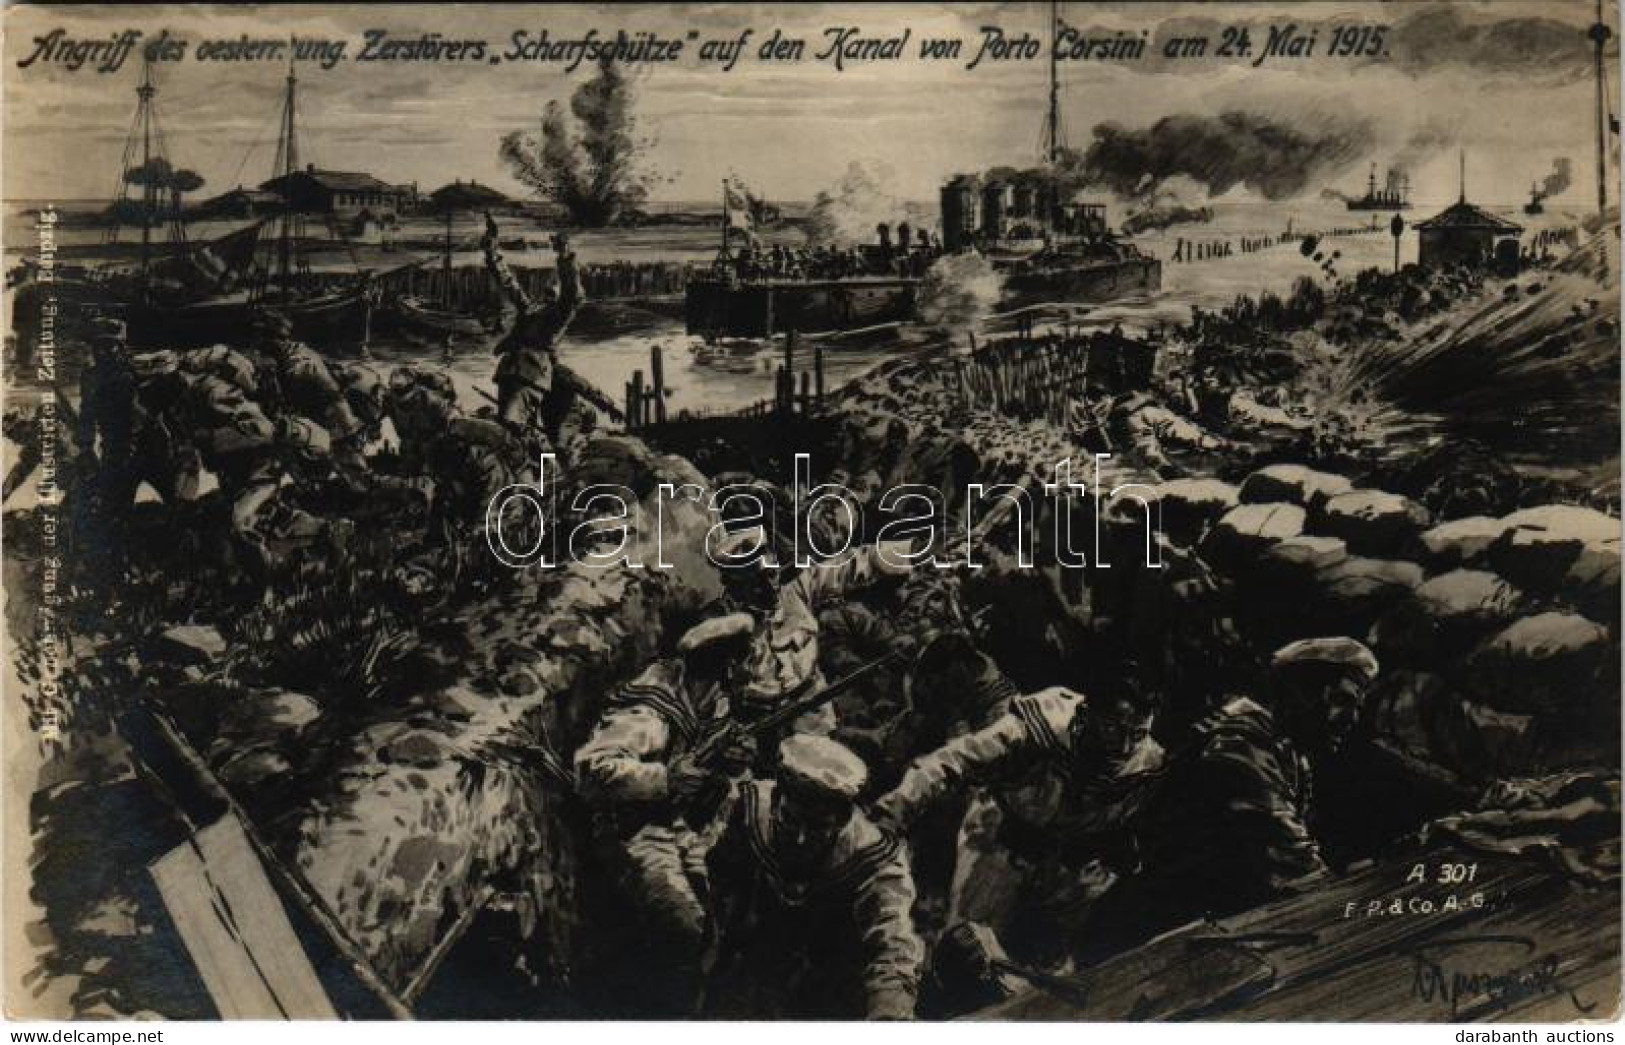 T2/T3 1915 Angriff Des Oesterr.-ung. Zerstörers "Scharfschütze" Auf Den Kanal Von Porto Corsini Am 24. Mai 1915. / SMS S - Ohne Zuordnung